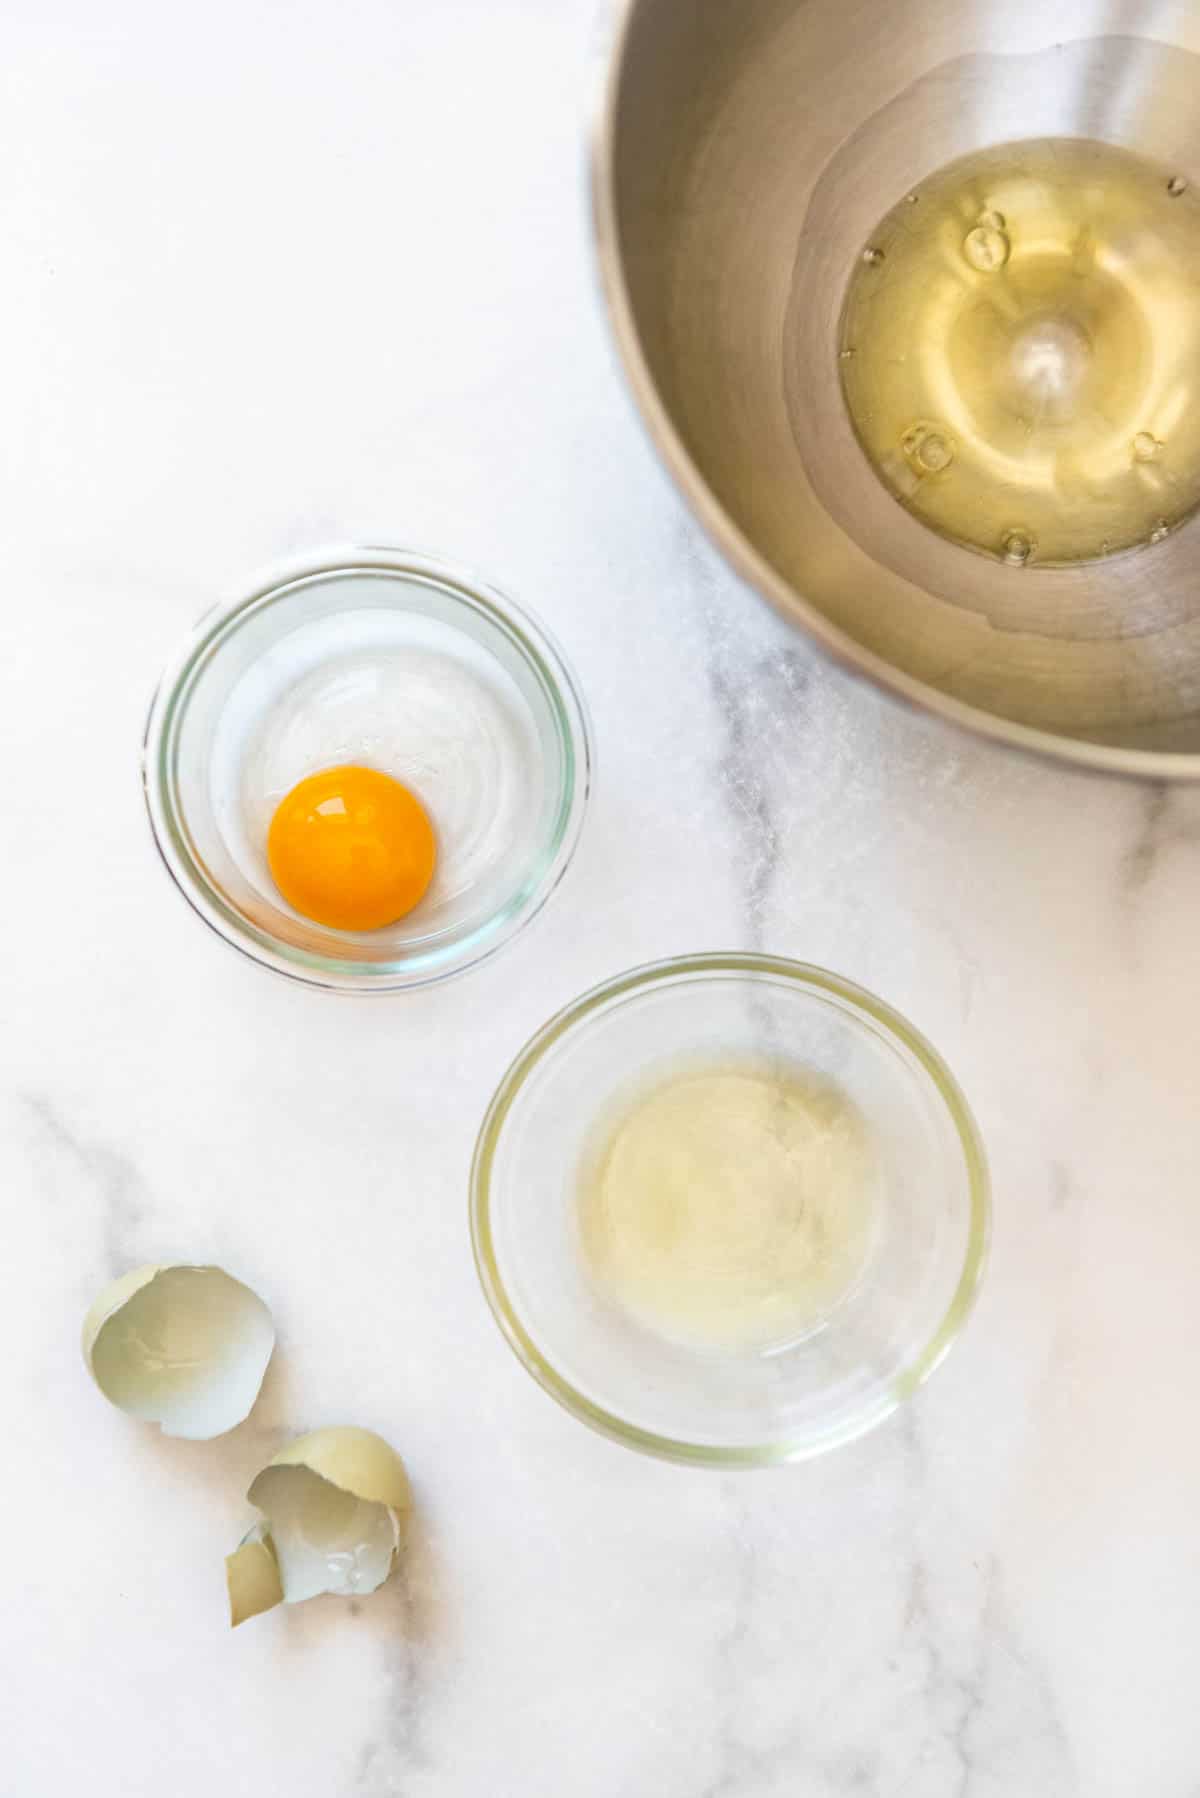 Separating egg whites and egg yolks.